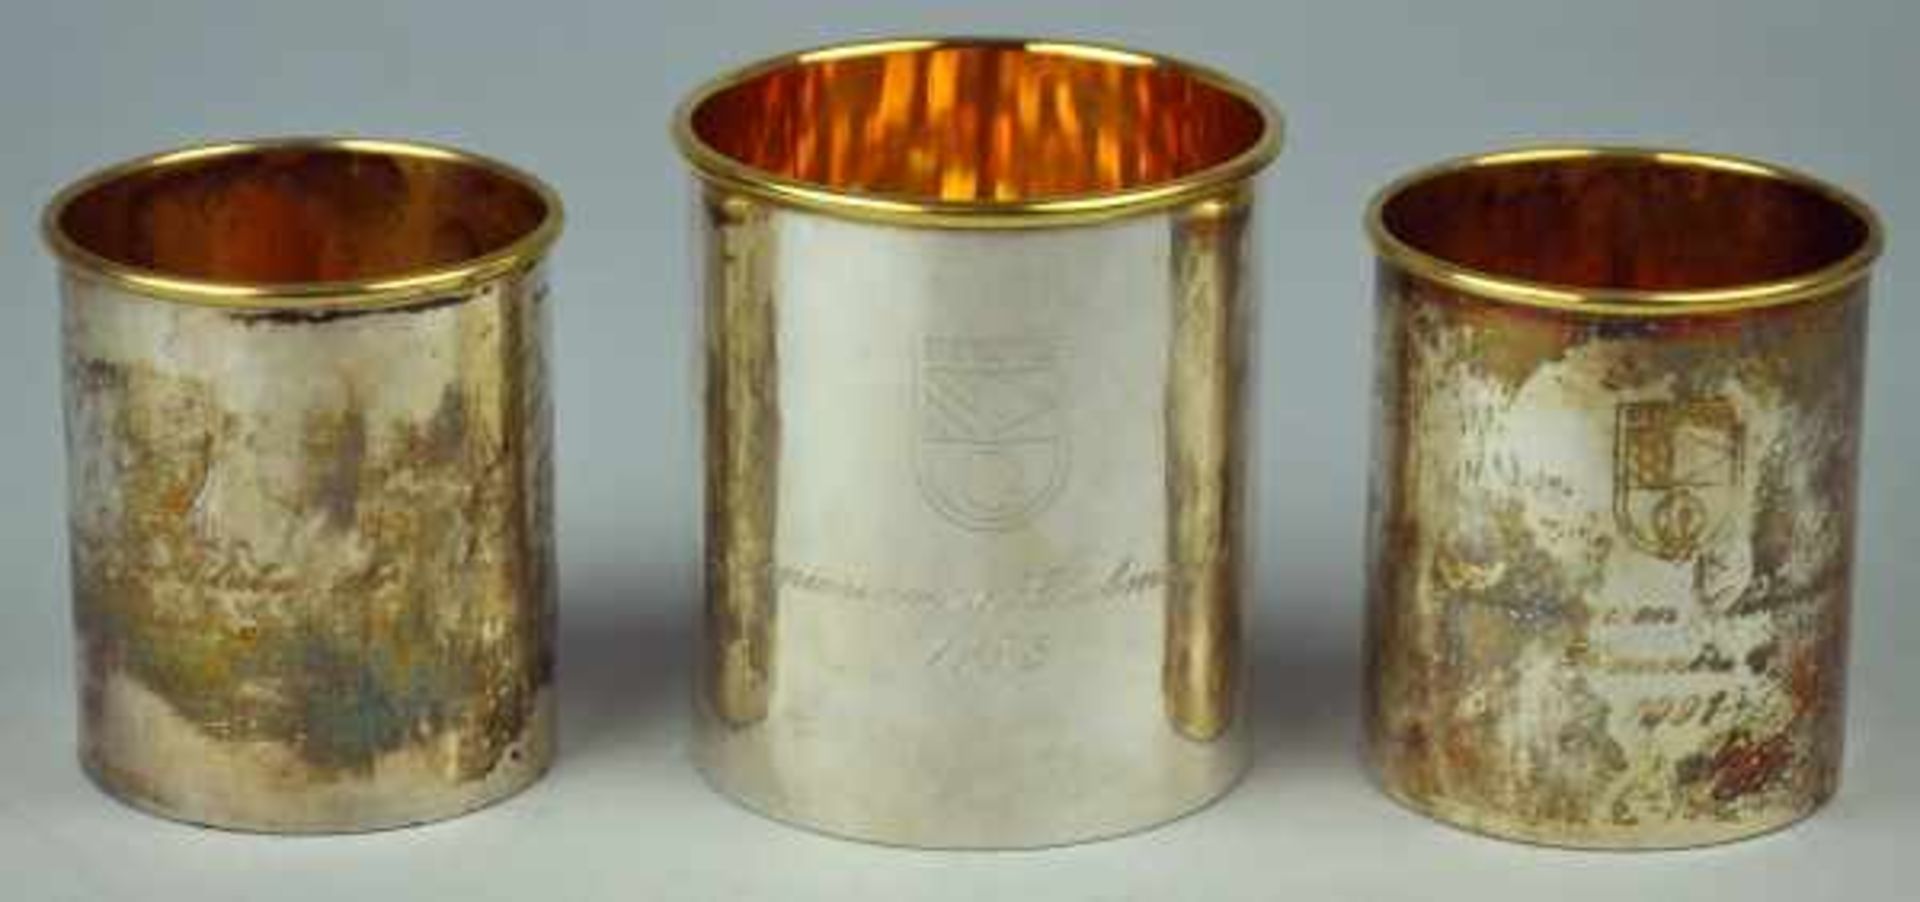 3 SILBERBECHER Golftrophäen, Innenvergoldung, Silber 925, 324gr, H 7cm (größter Becher)